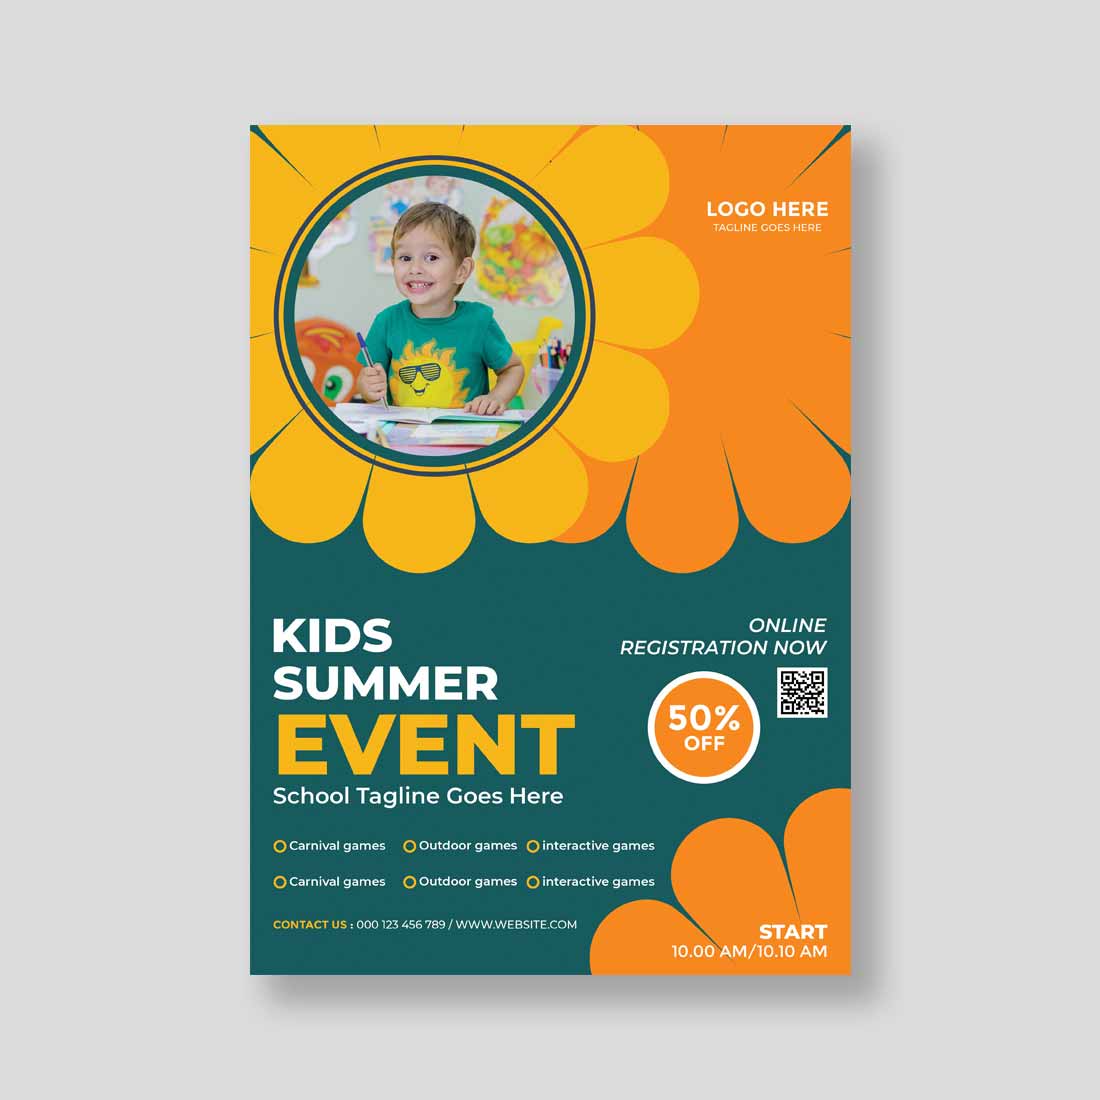 Kids Summer Event Flyer Design preview image.